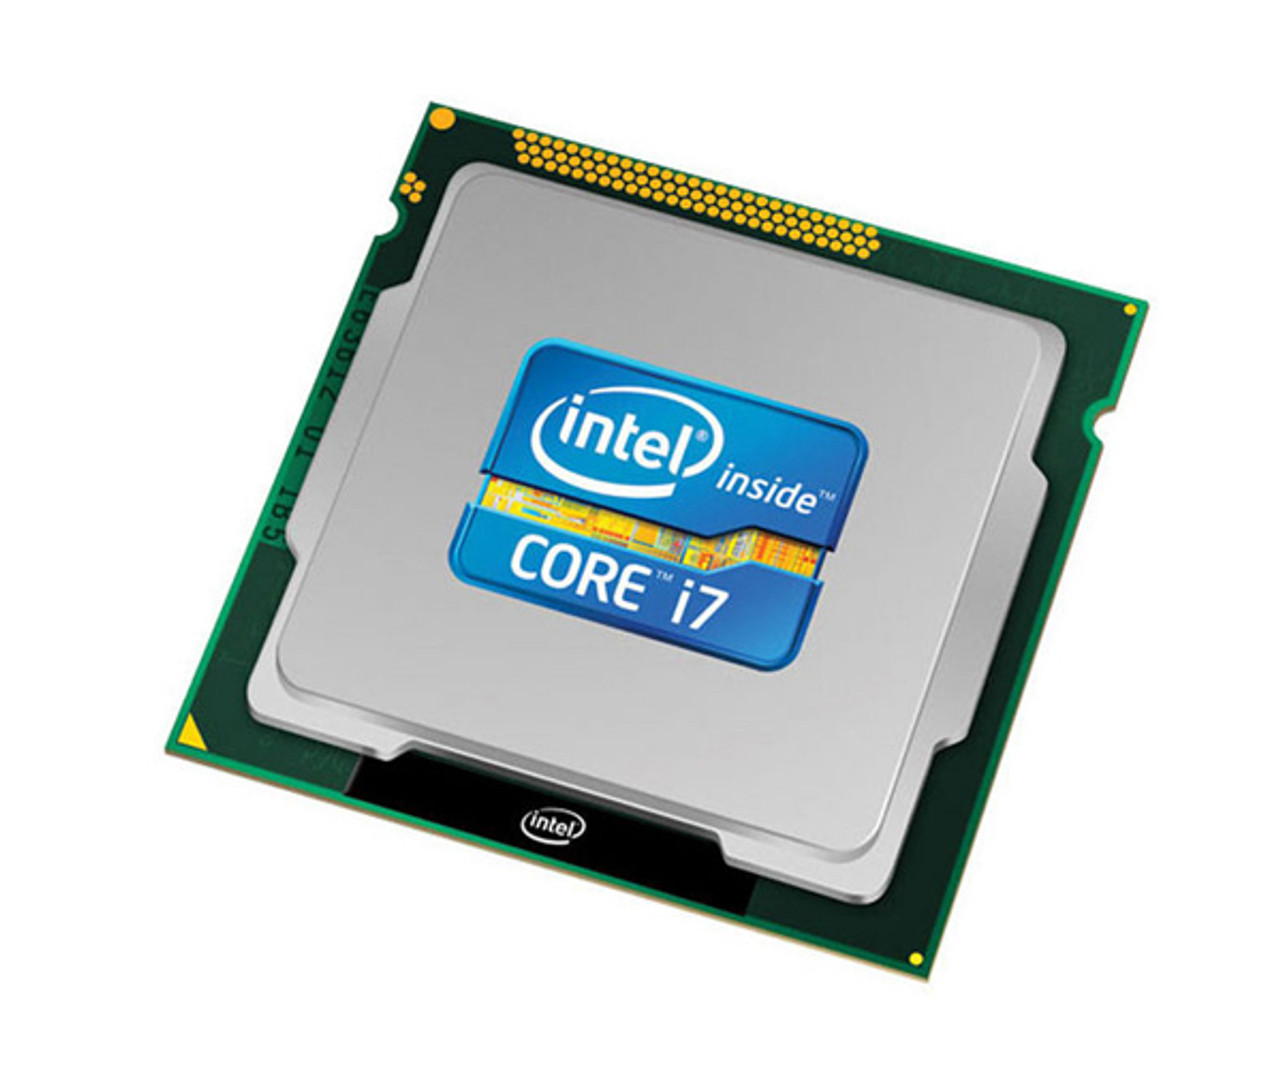 i7-4980HQ Intel Core i7 Quad Core 2.80GHz 5.00GT/s DMI2 6MB L3 Cache Mobile Processor